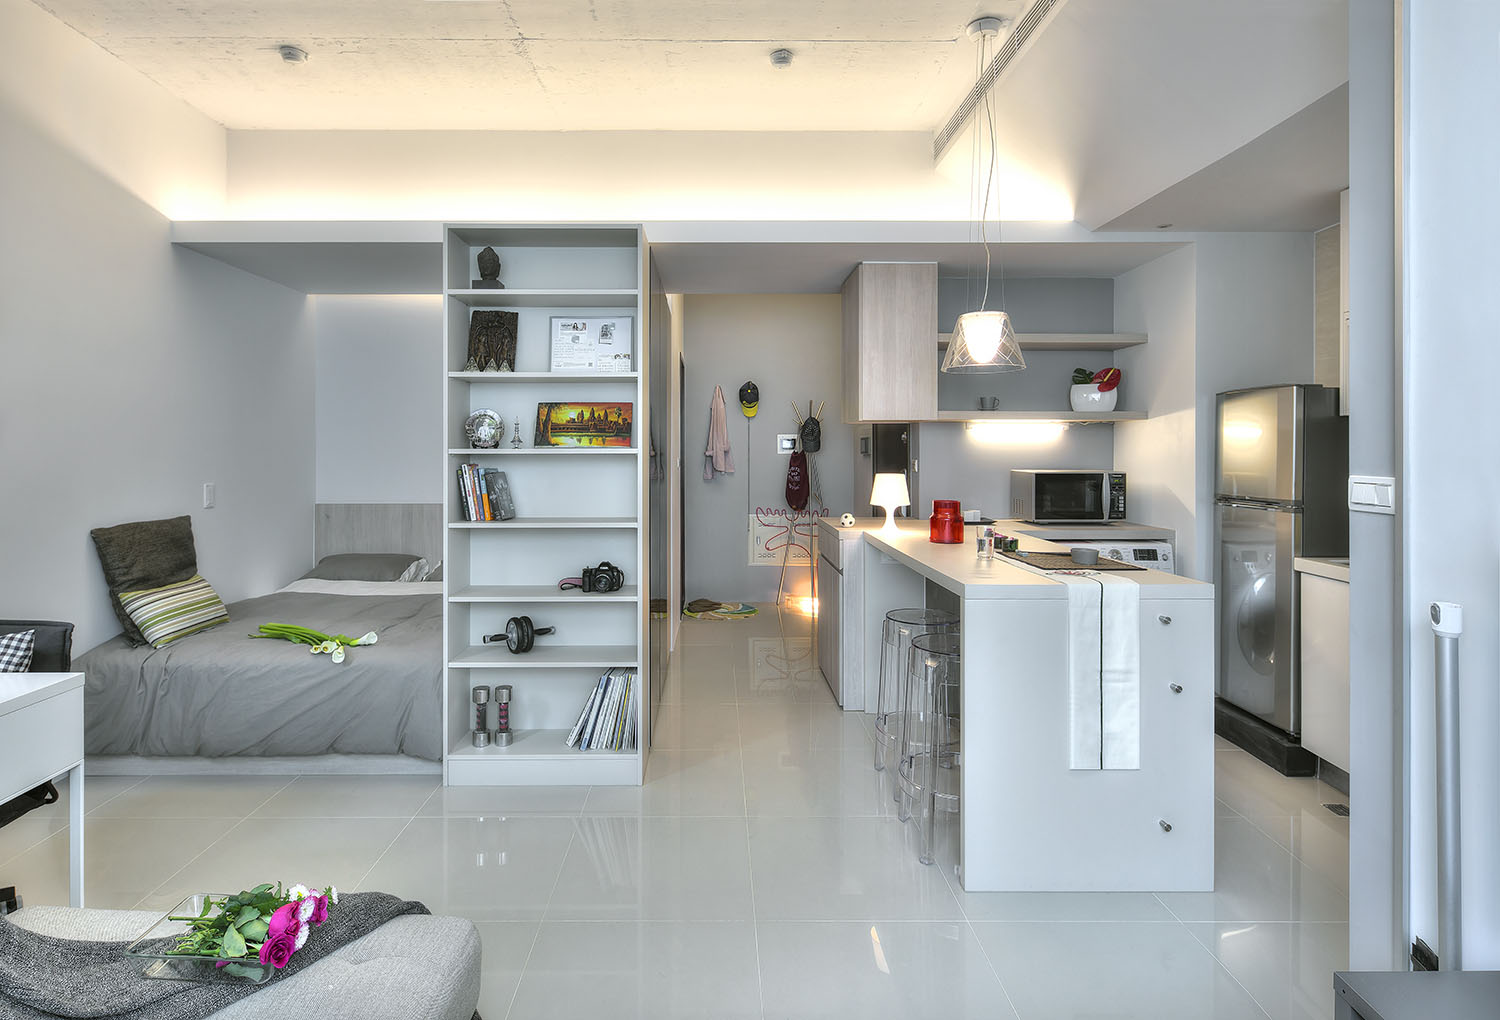 Small Taipei Studio Apartment With Clever Efficient Design | iDesignArch |  Interior Design, Architecture & Interior Decorating eMagazine